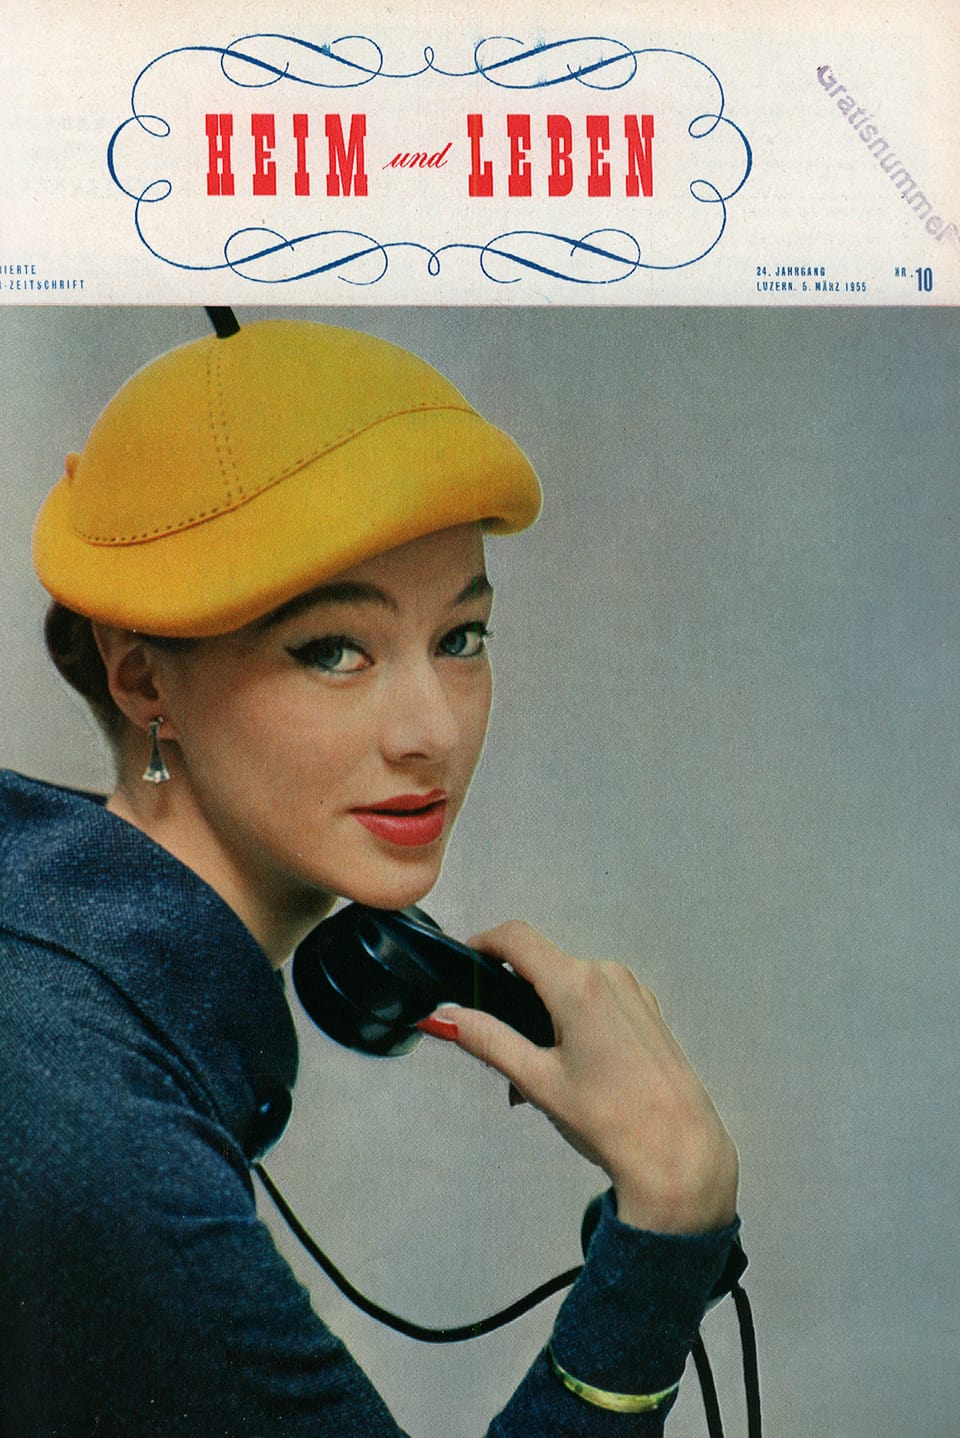 Cover von «Heim und Leben», 24. Jahrgang, 5. März 1955: Frau mit gelber Mütze und Telefonhörer in der Hand.